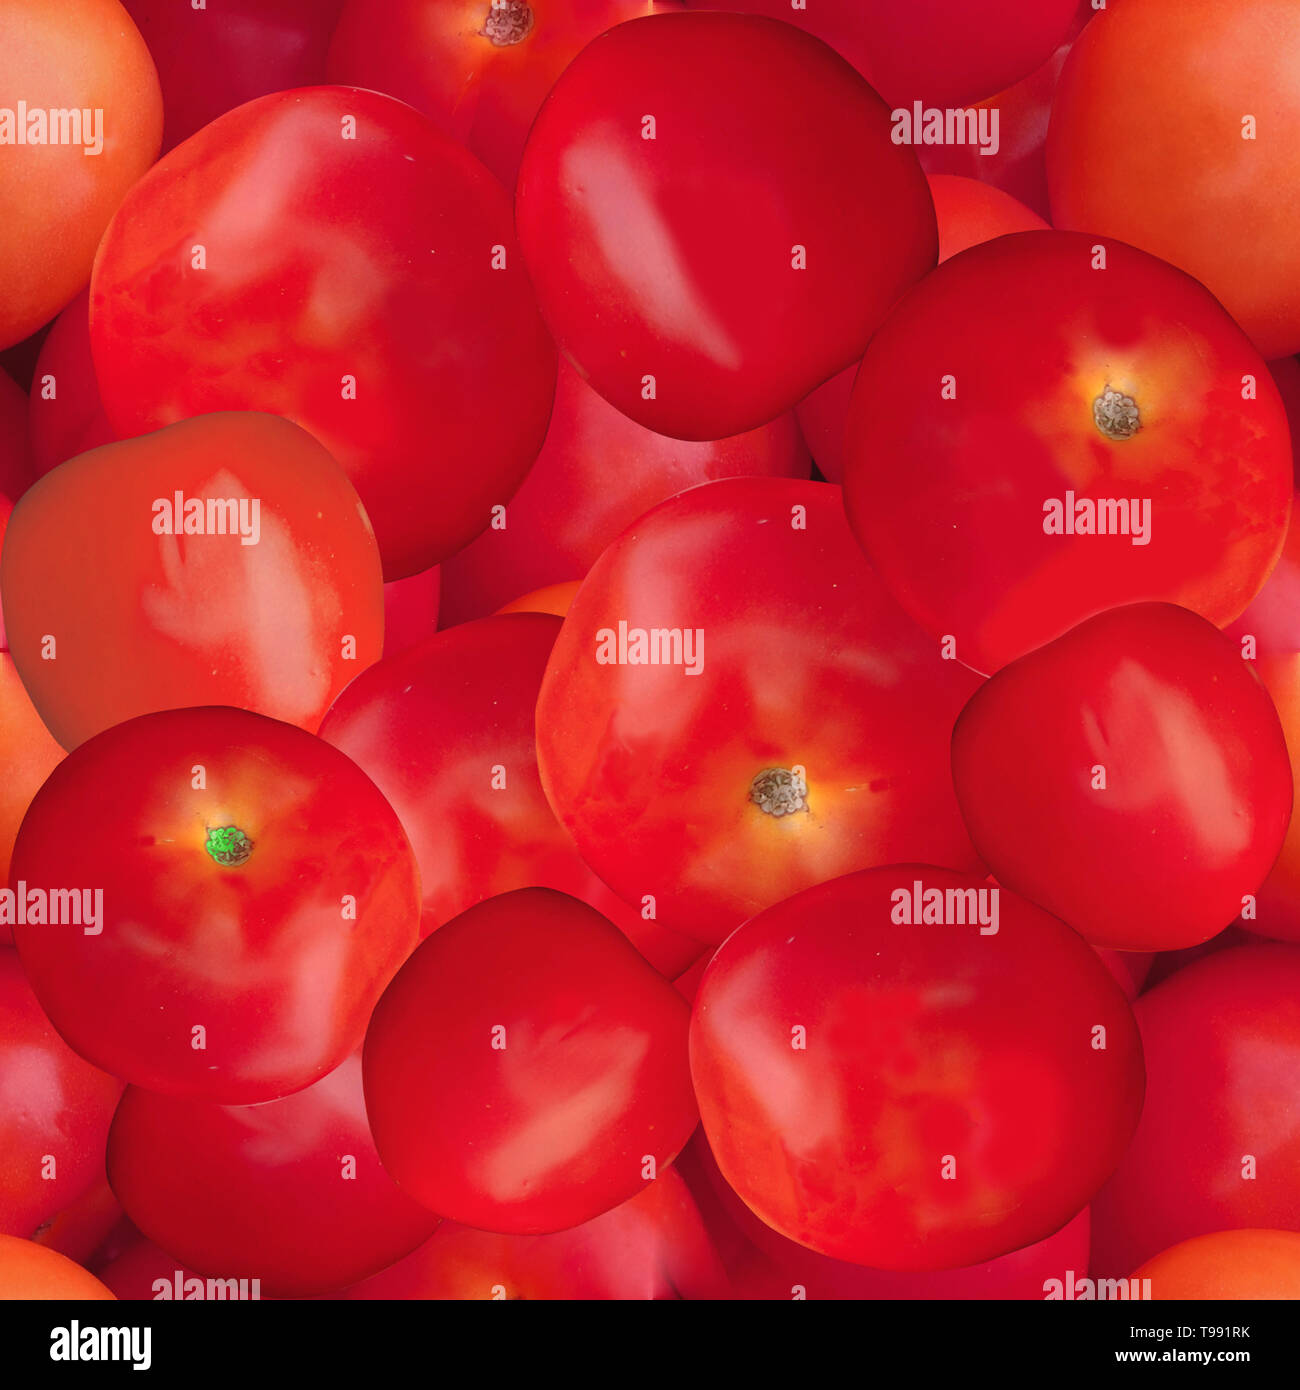 Tomatoes Seamless Texture Tile Stock Photo